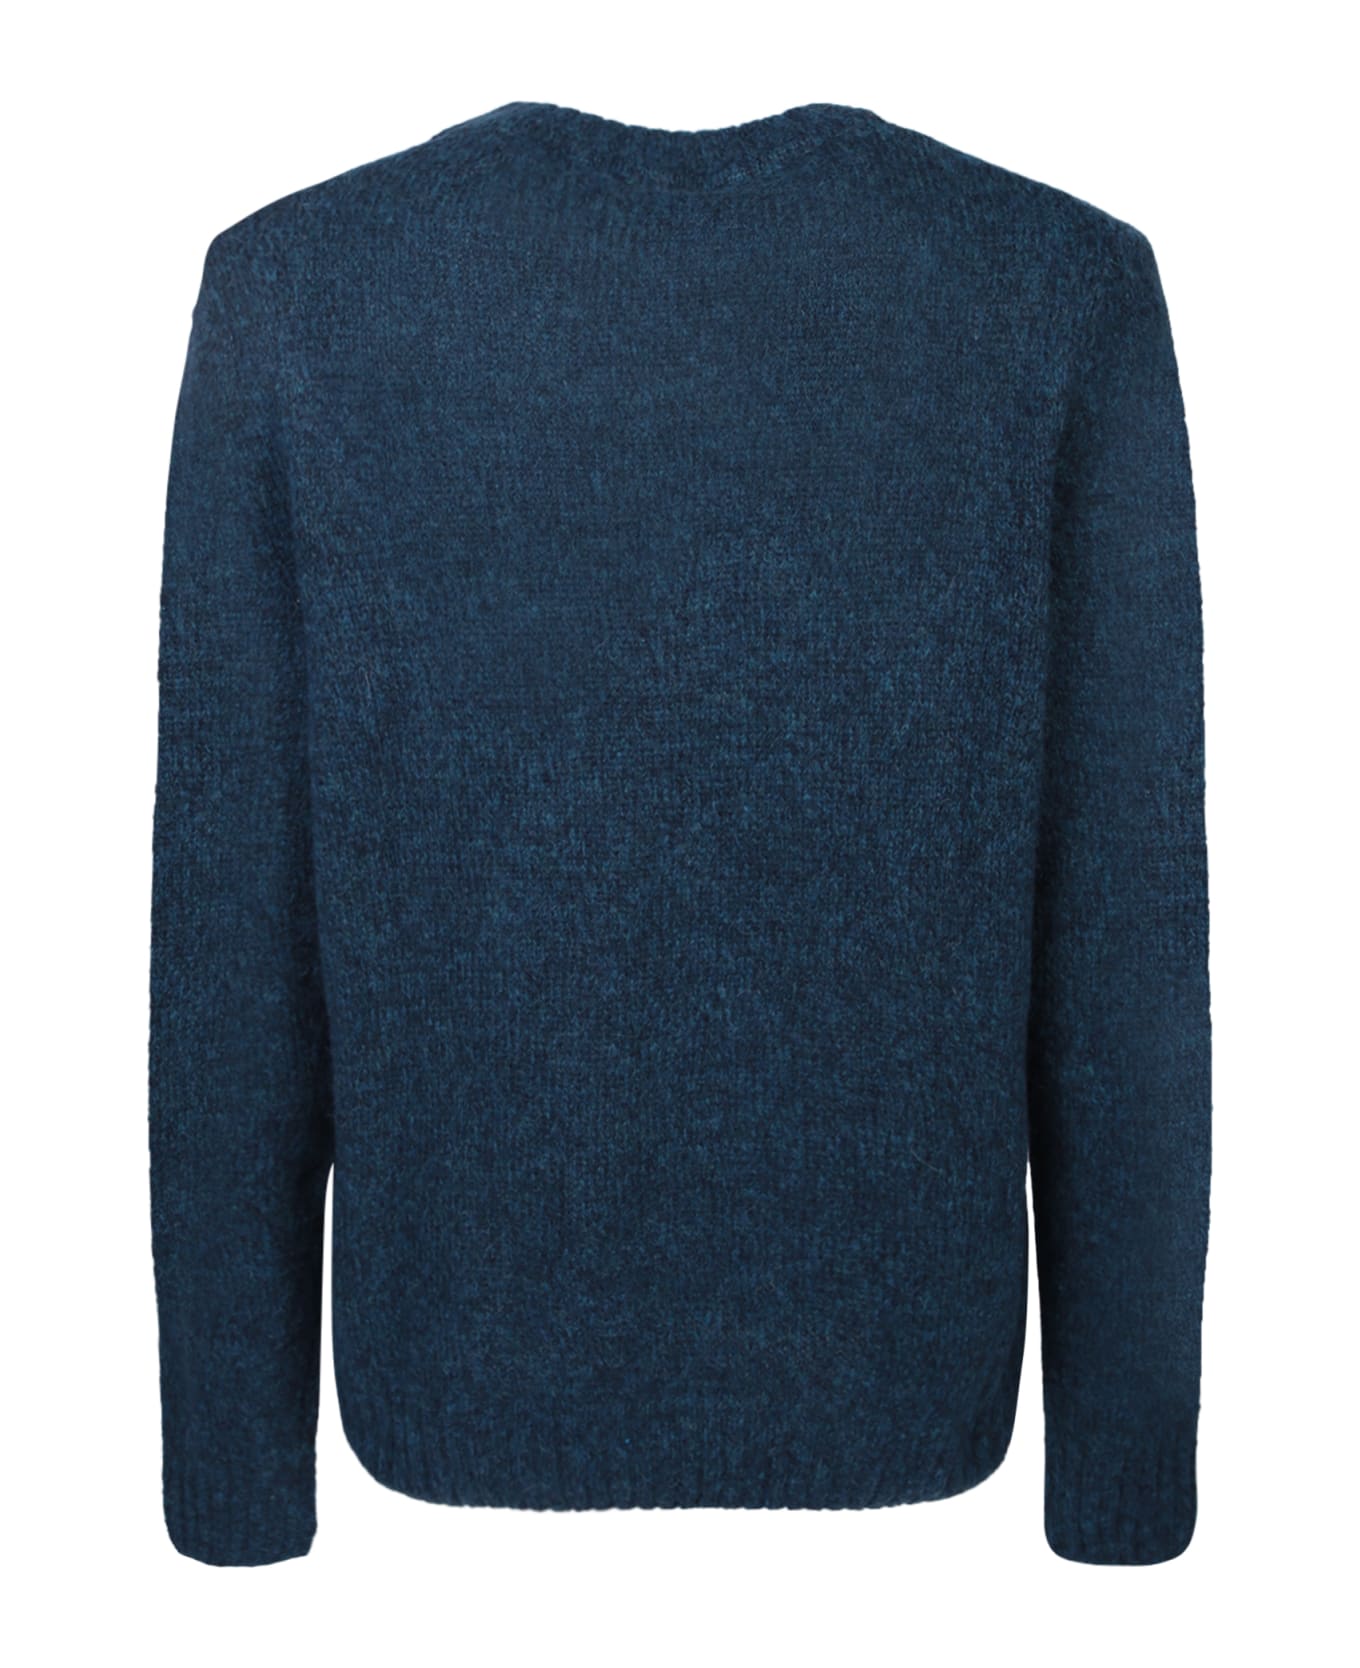 Lardini Roundneck Blue Sweater - Beige ニットウェア